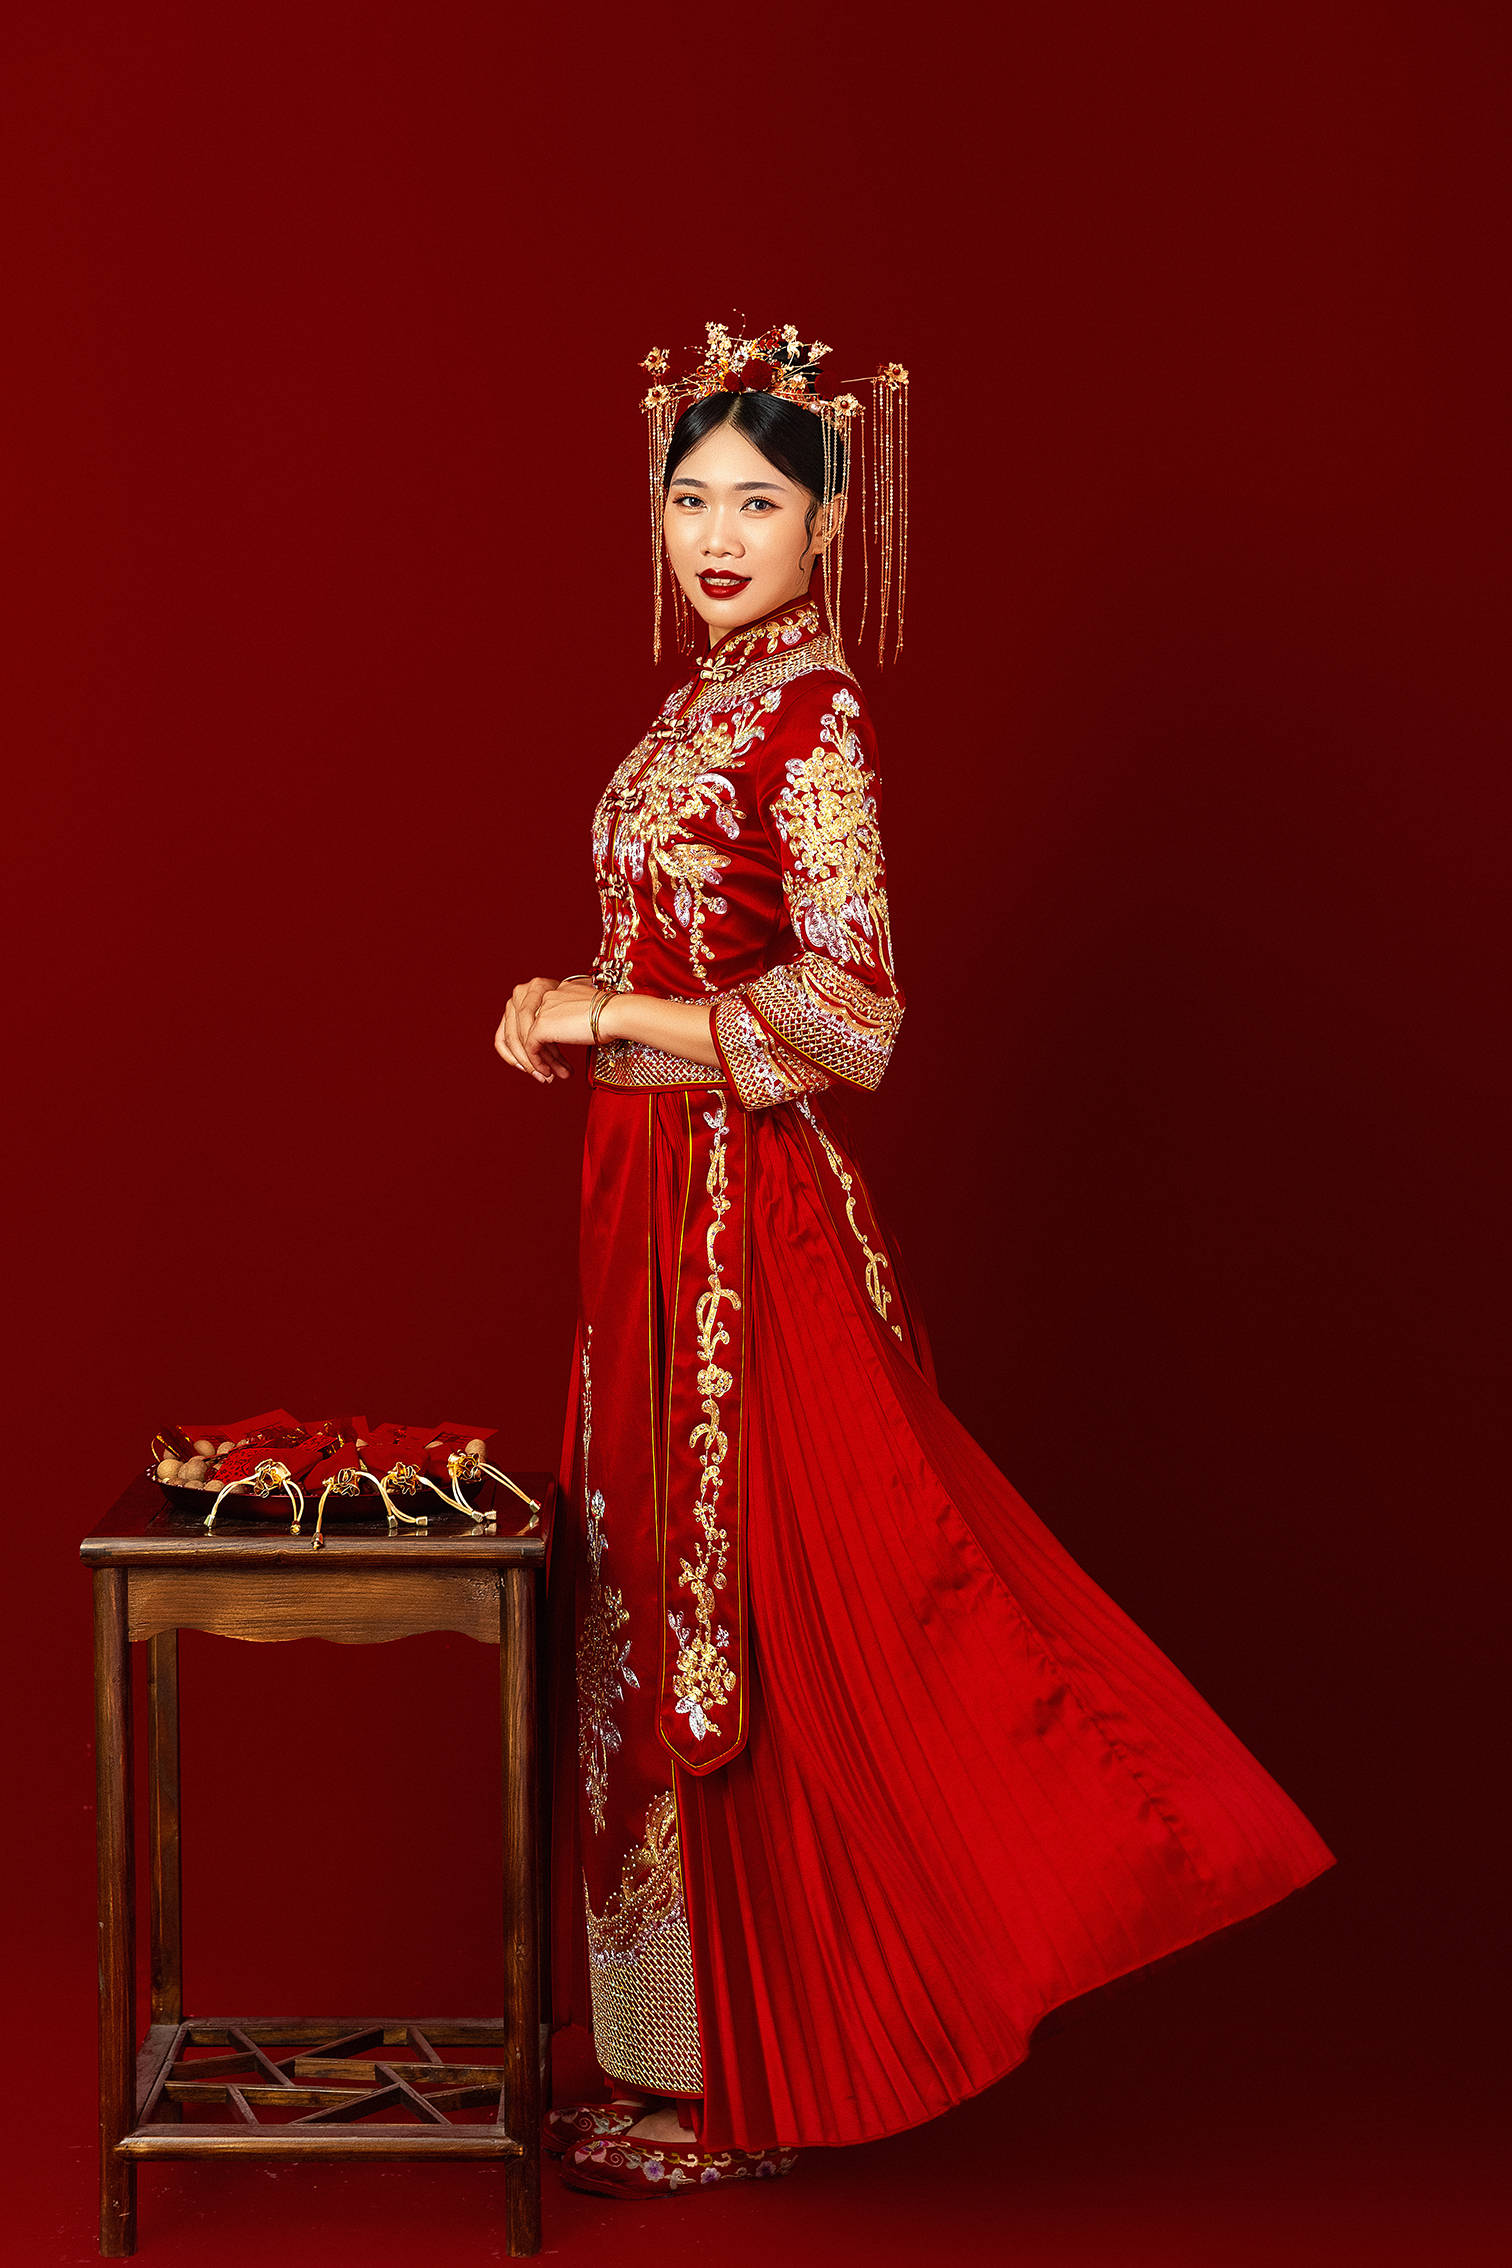 零度摄影:网红喜嫁风婚纱摄影,打造新娘高贵气质